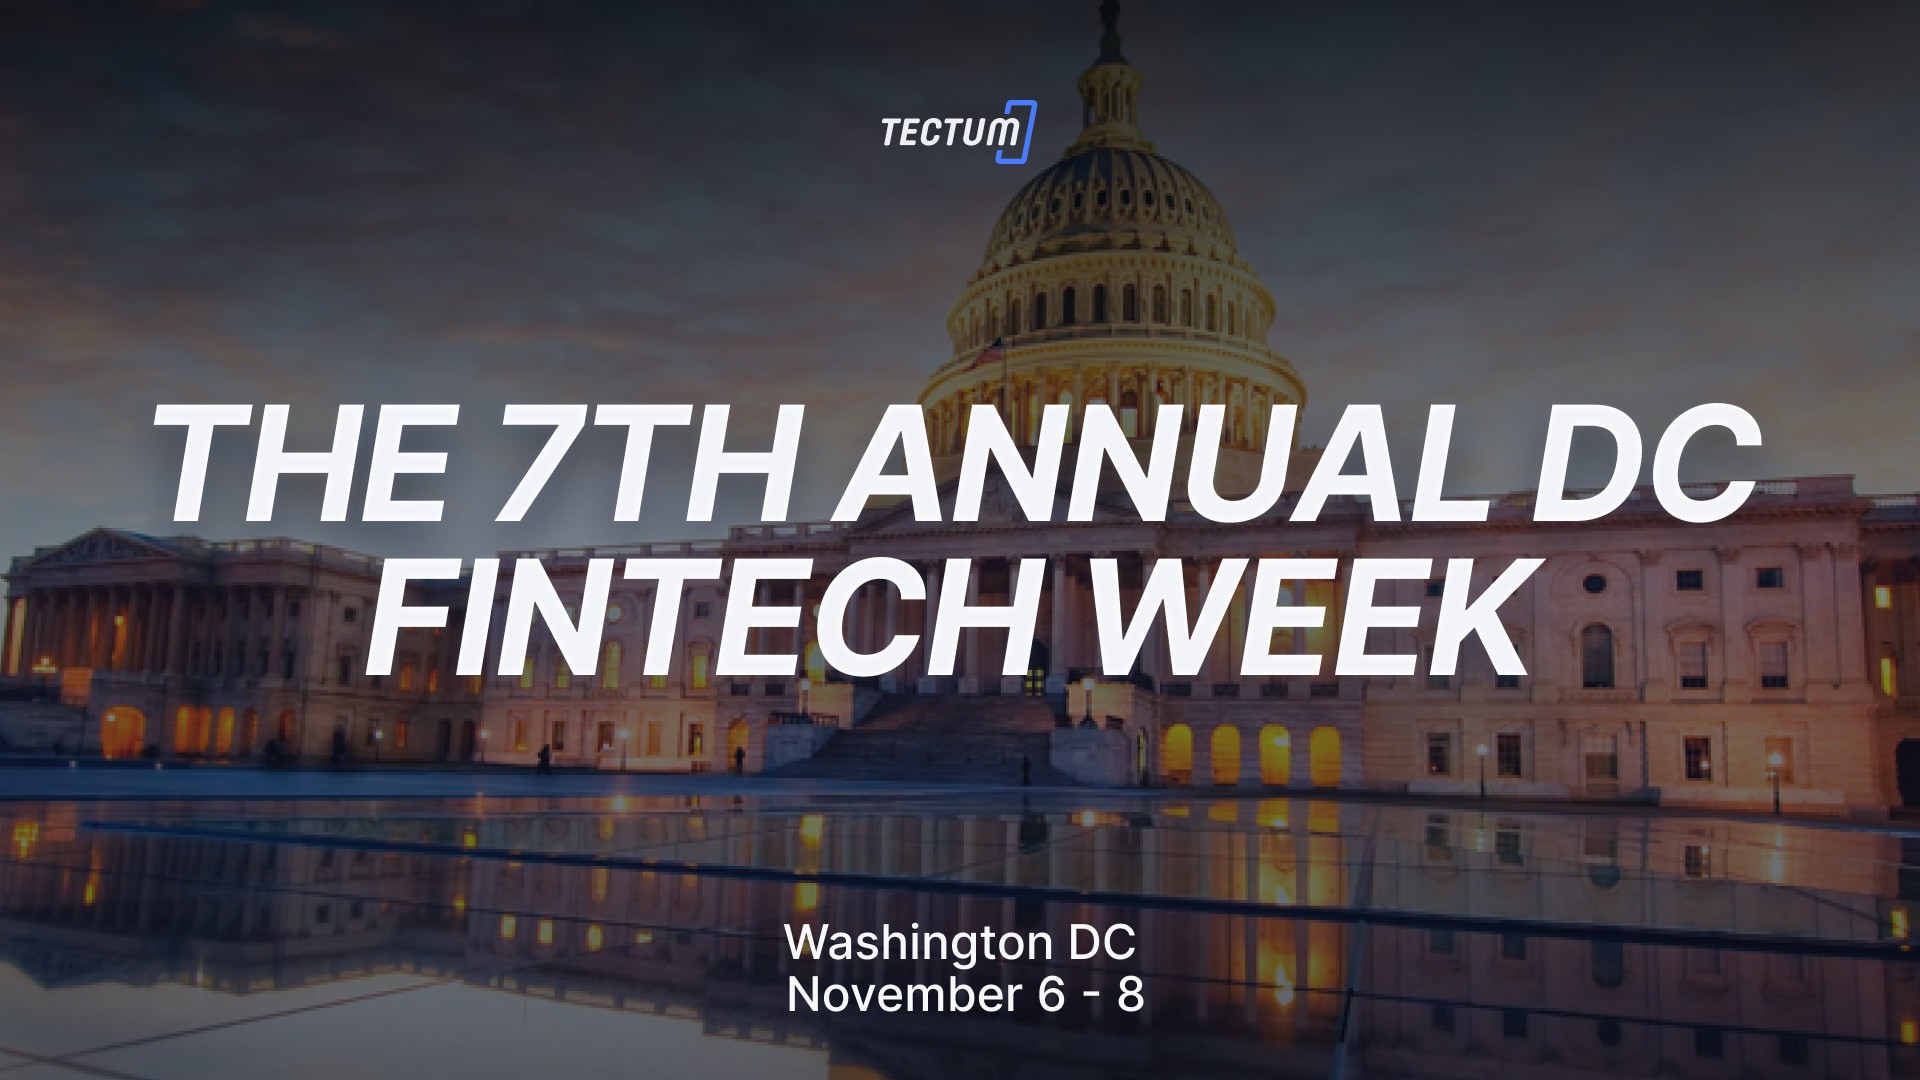 Join Tectum at The 7th Annual DC Fintech Week Tectum Blockchain